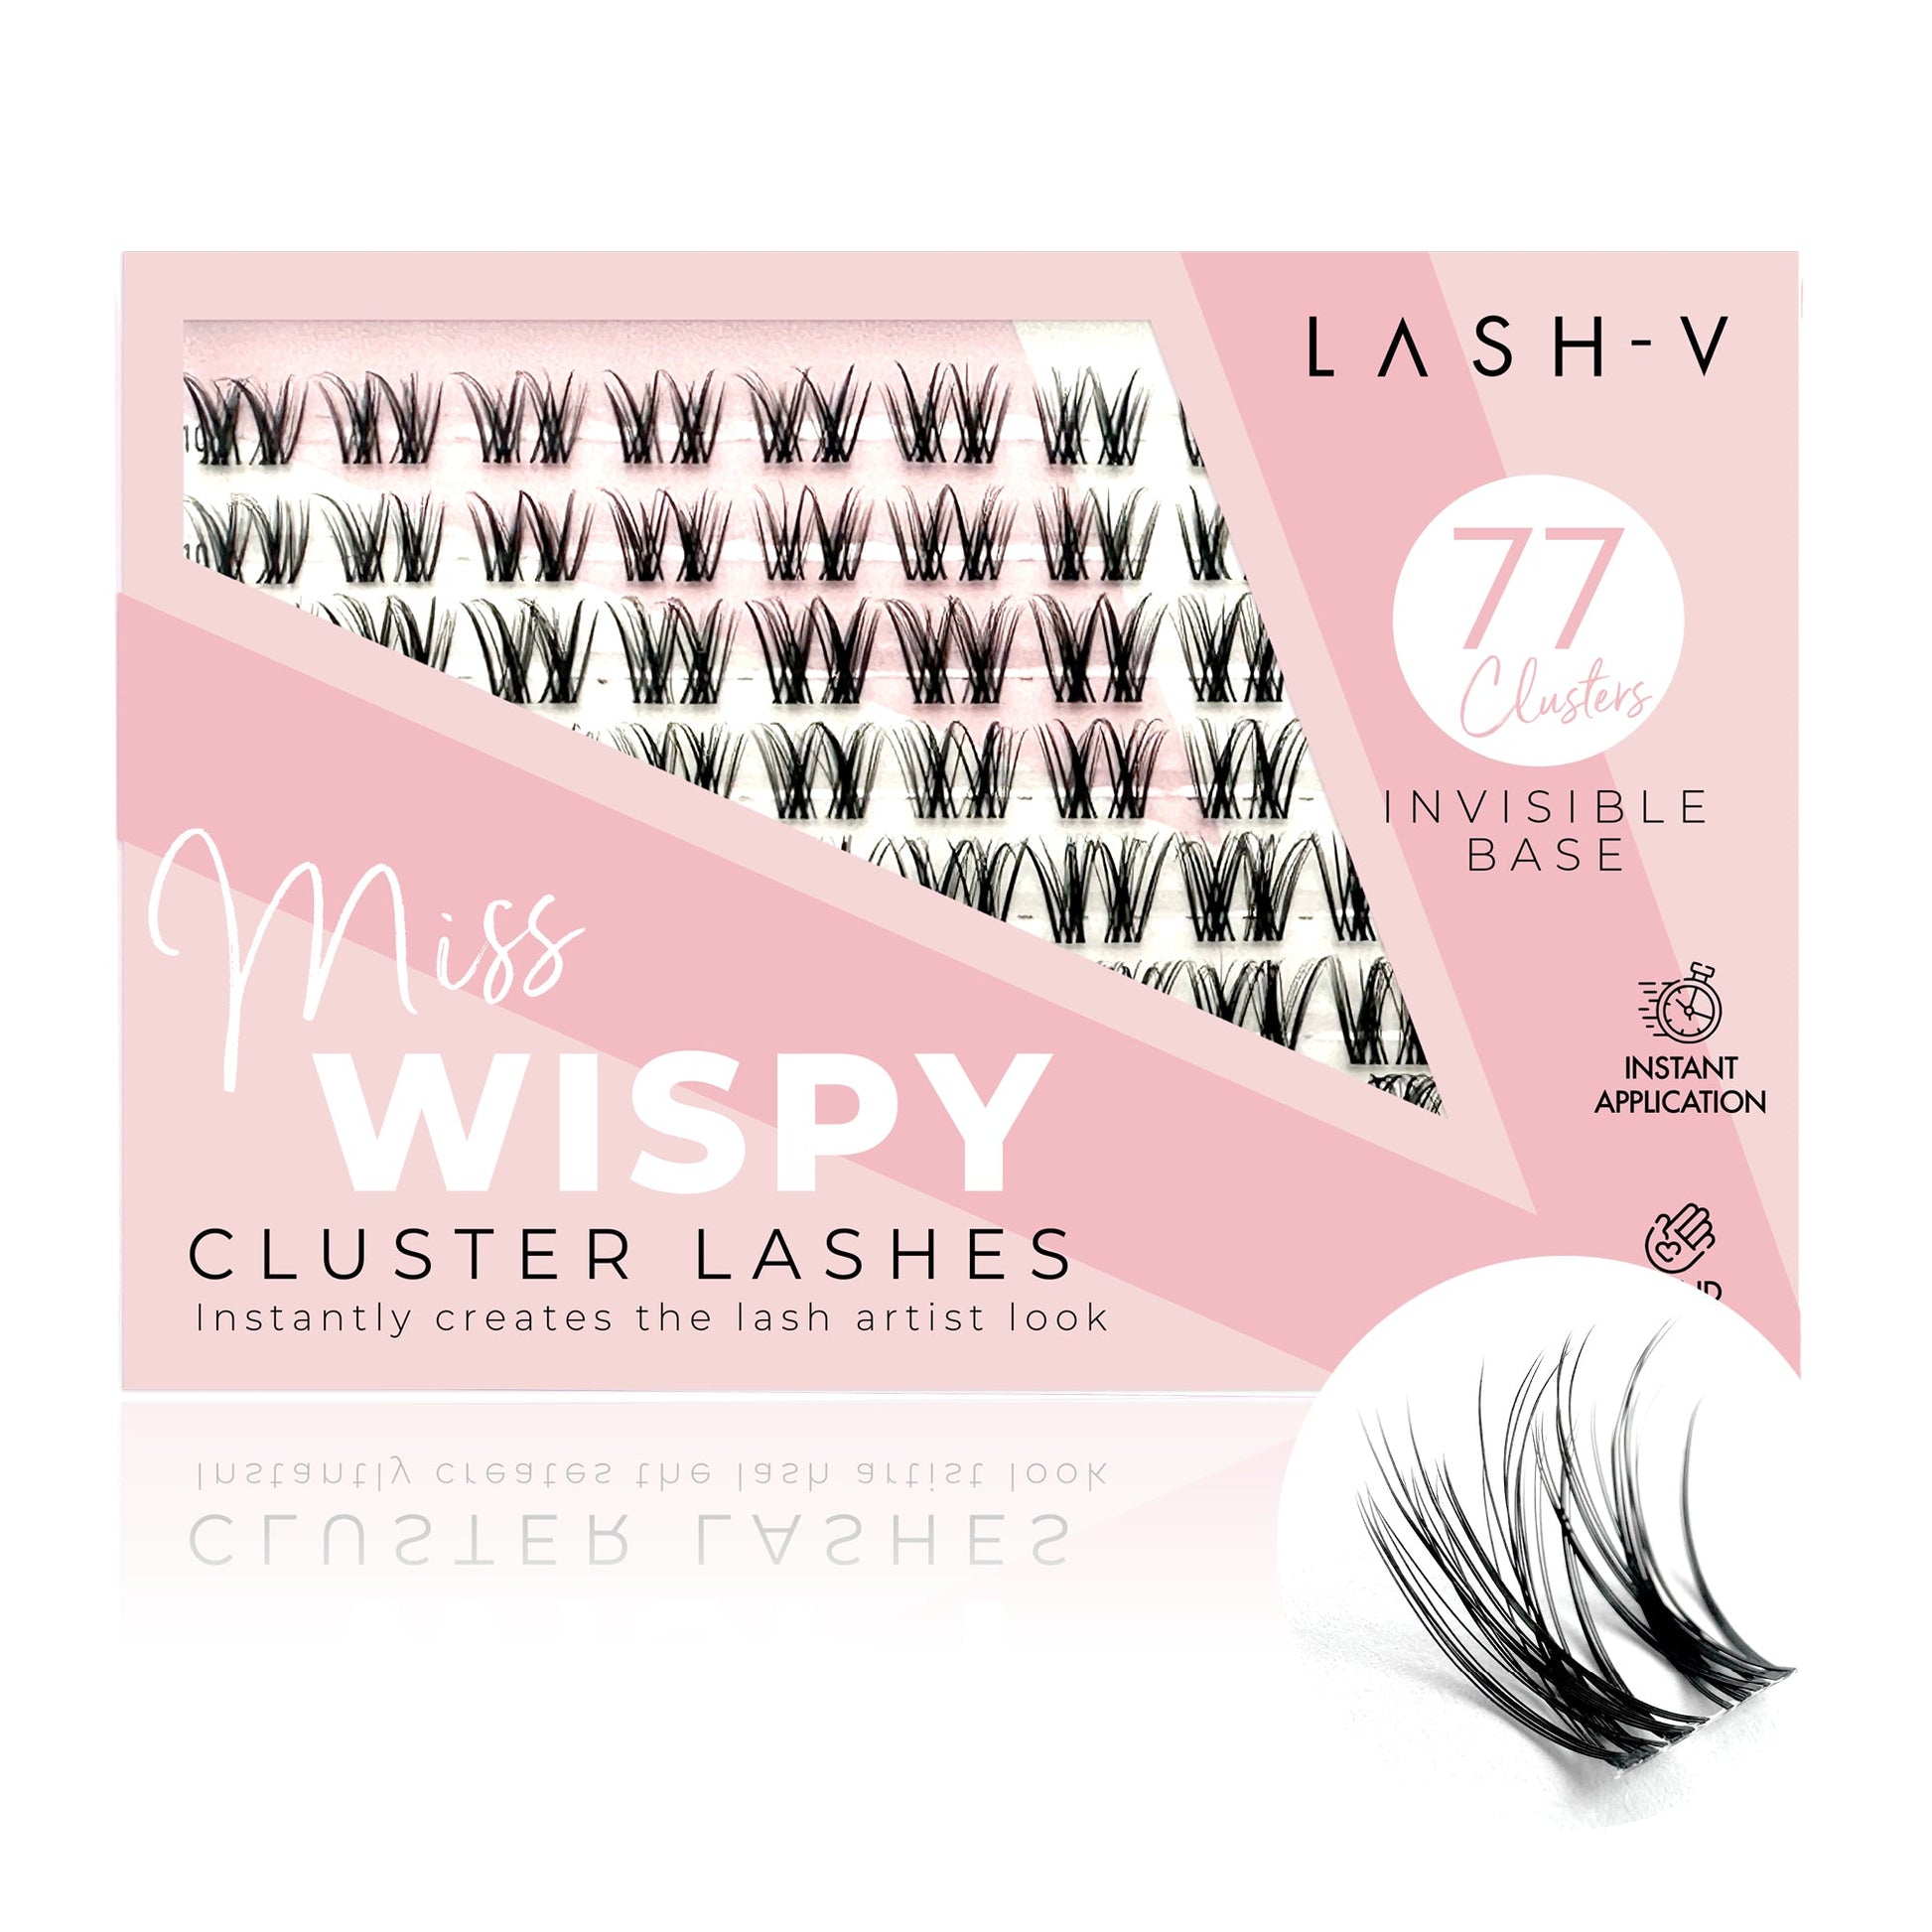 Miss Wispy Cluster Lashes - 77 Clusters False Eyelashes OneVSalon   